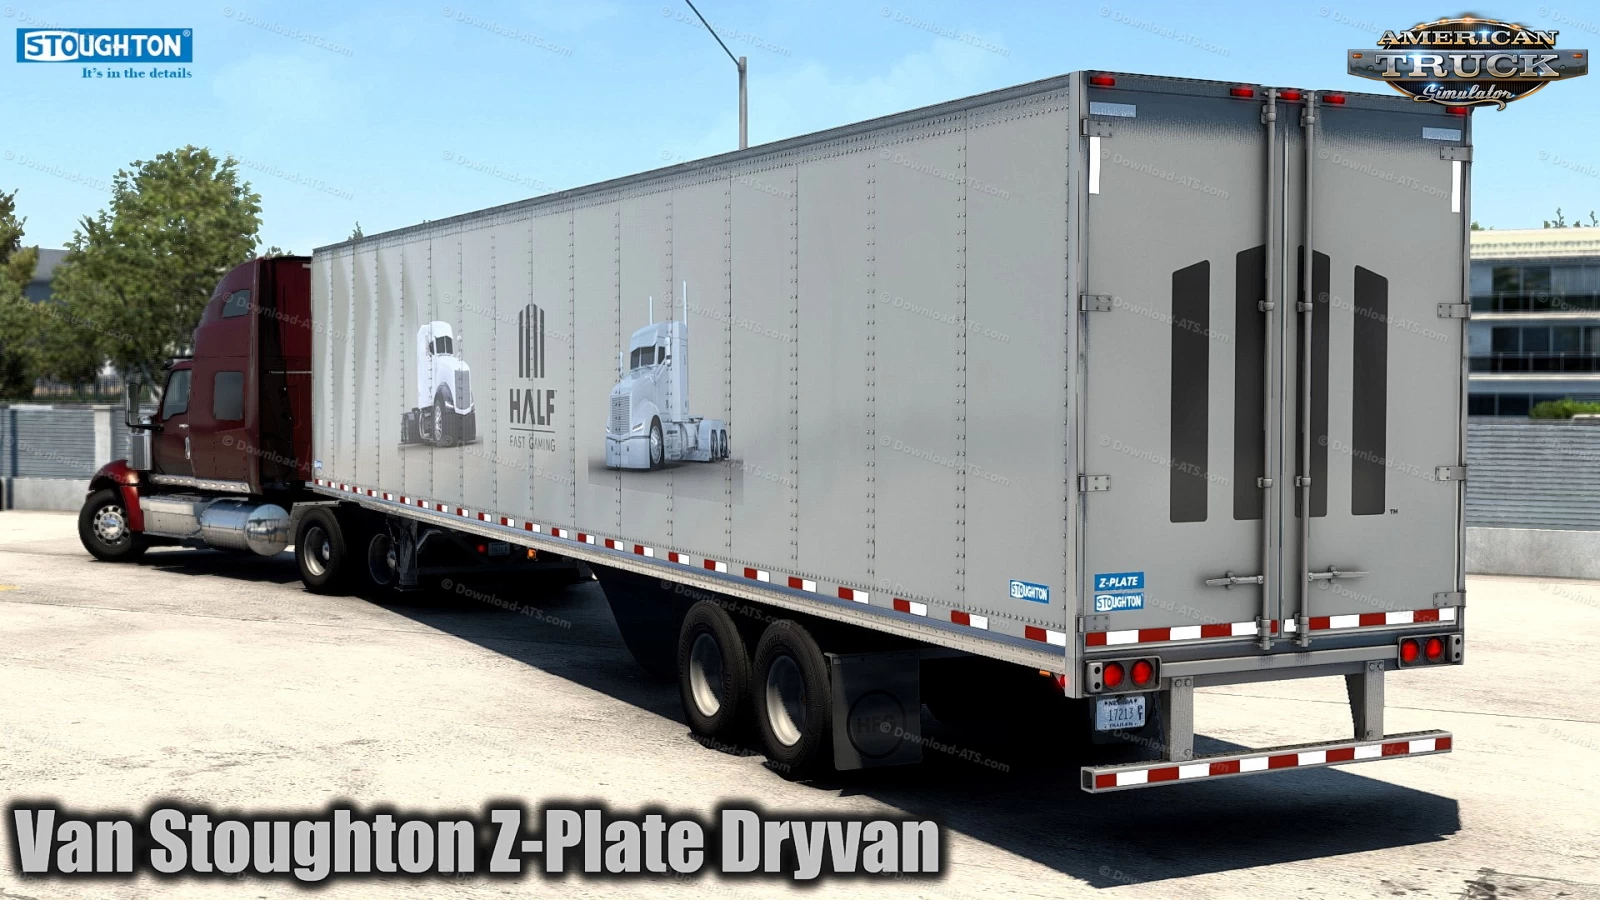 Van Stoughton Z-Plate Dryvan Trailer v1.0 (1.43.x) for ATS